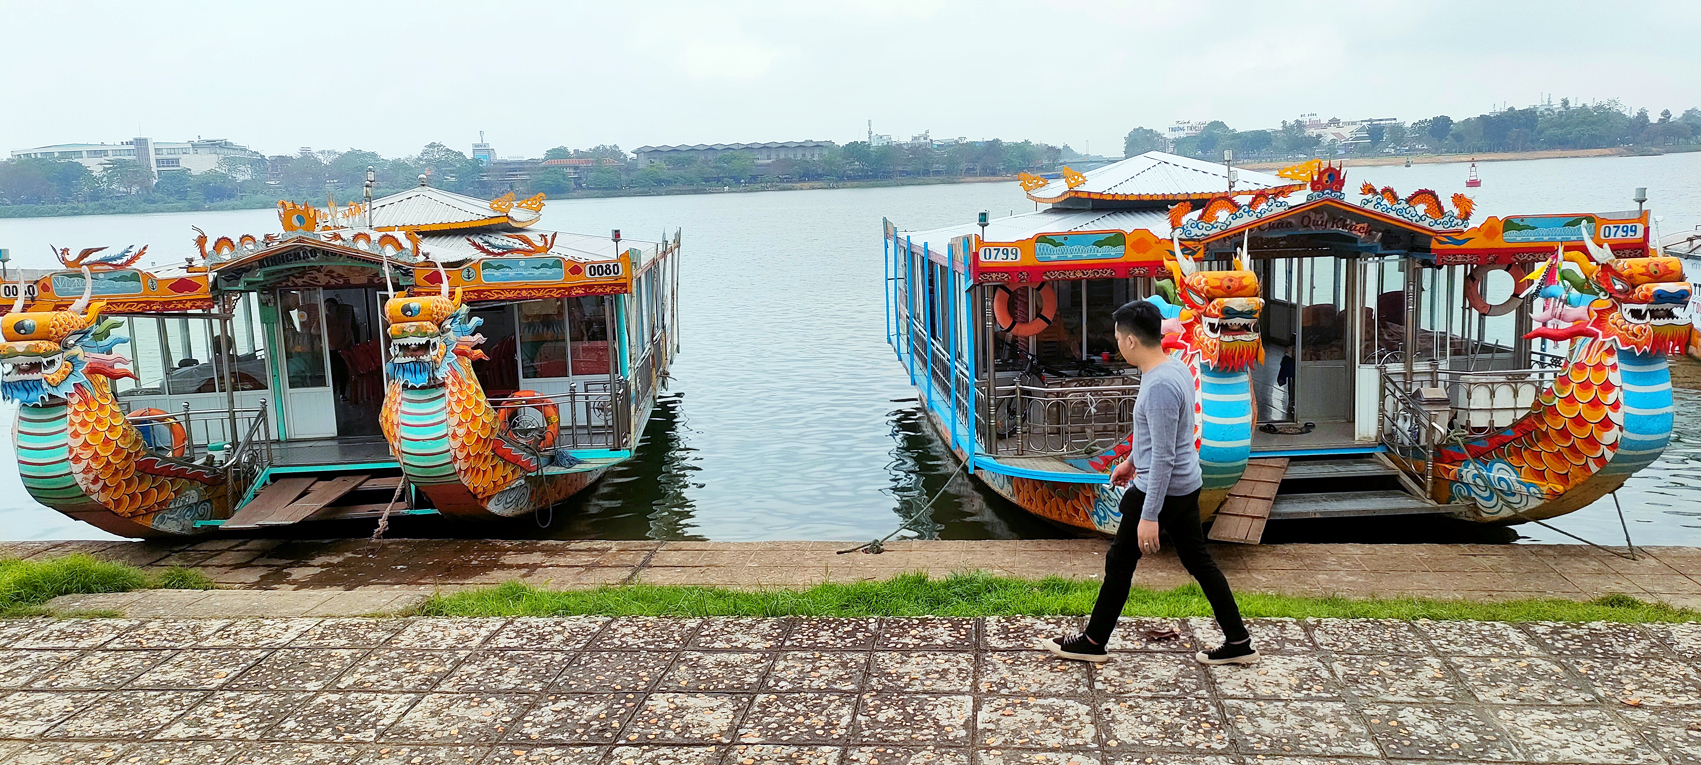 Nhiều chủ thuyền rồng trên sông Hương đứng ngồi không yên khi thuyền sắp hết niên hạn sử dụng